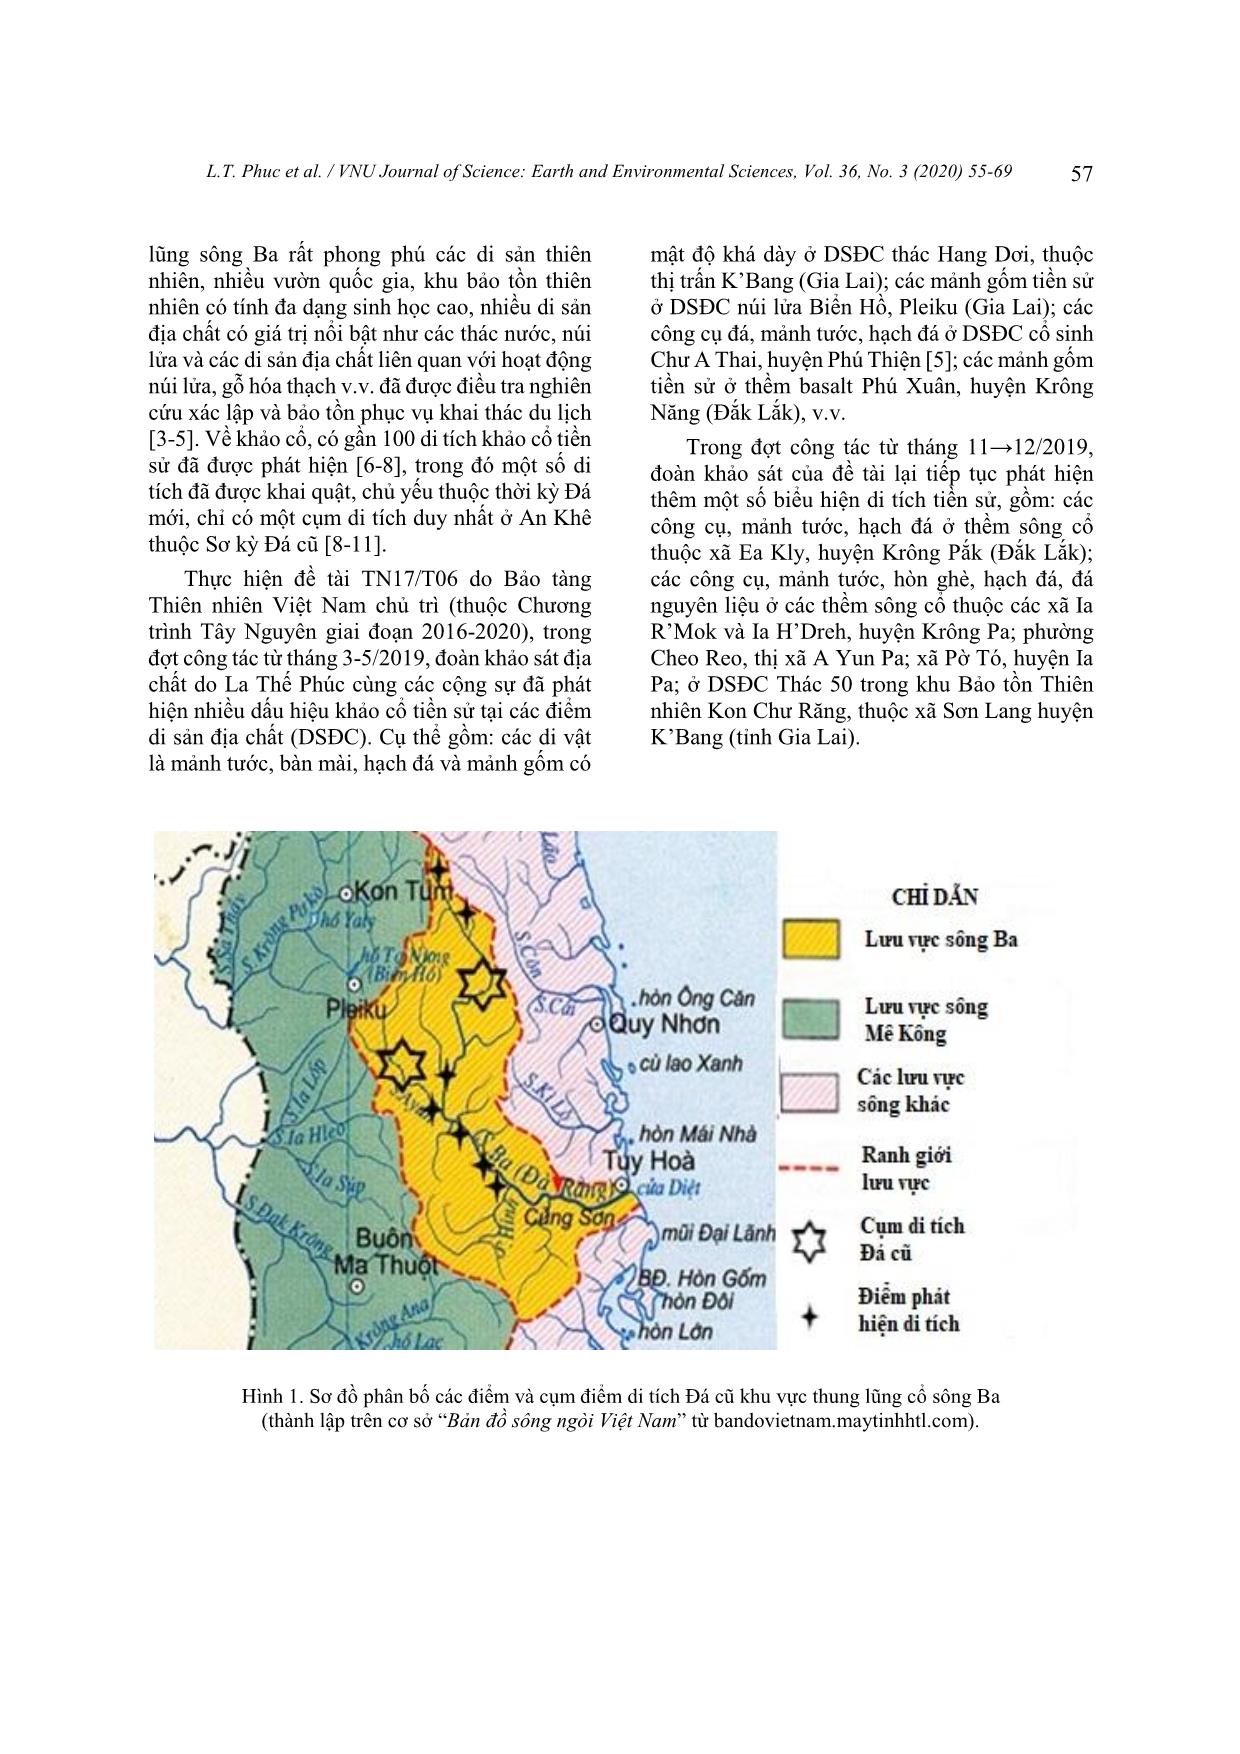 Một số phát hiện mới về di tích khảo cổ trong các thành tạo và di sản địa chất dọc thung lũng cổ sông Ba trang 3